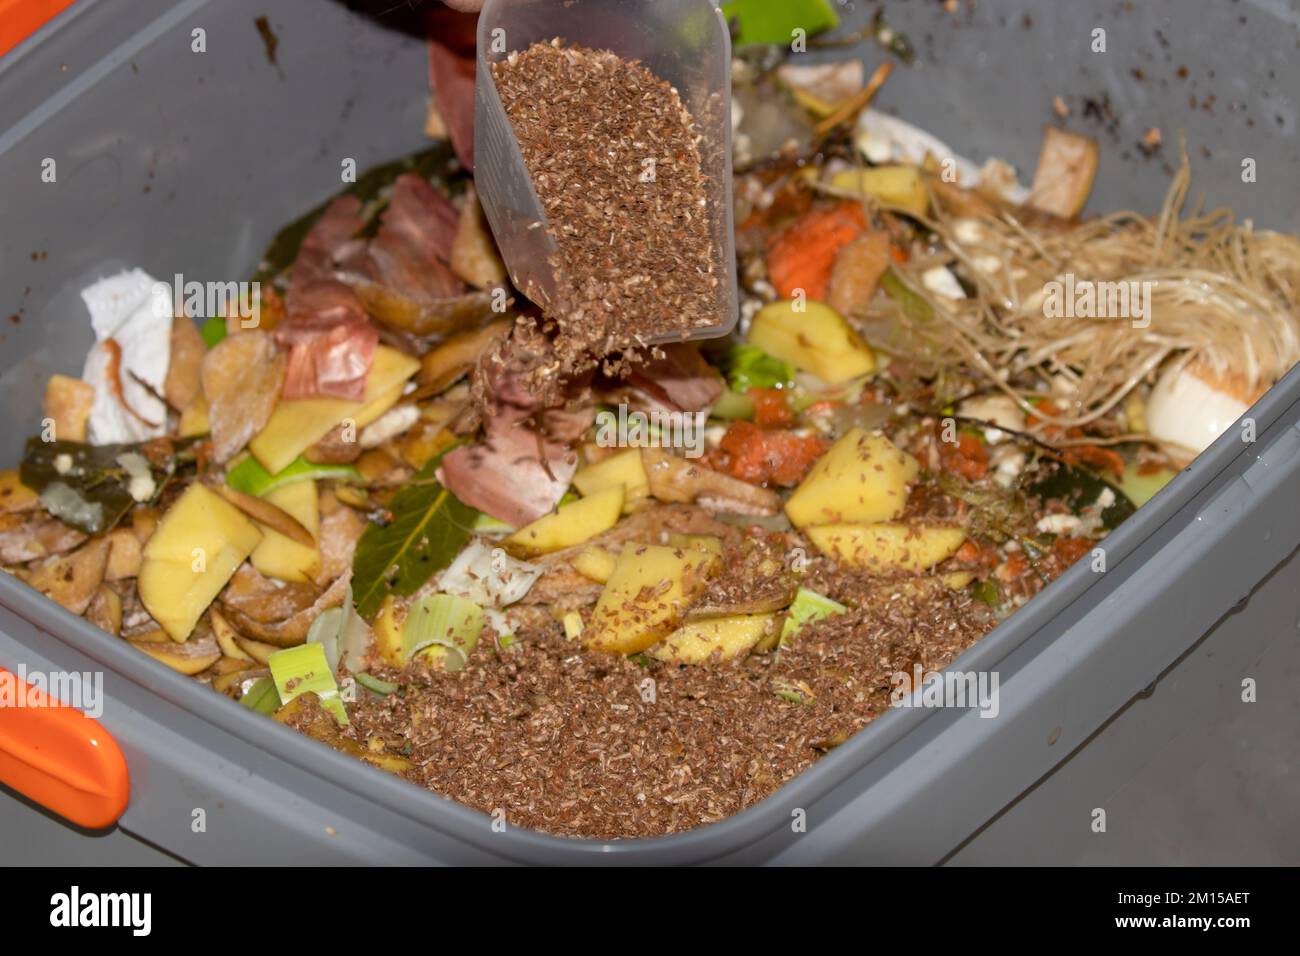 Bokashi-Fermentierungs- und Kompostiermethode. Kompostierung in der Küche mit EM-wirksamen Mikroorganismen, die auf der Weizenkleie imprägniert sind, um sie zu fermentieren Stockfoto